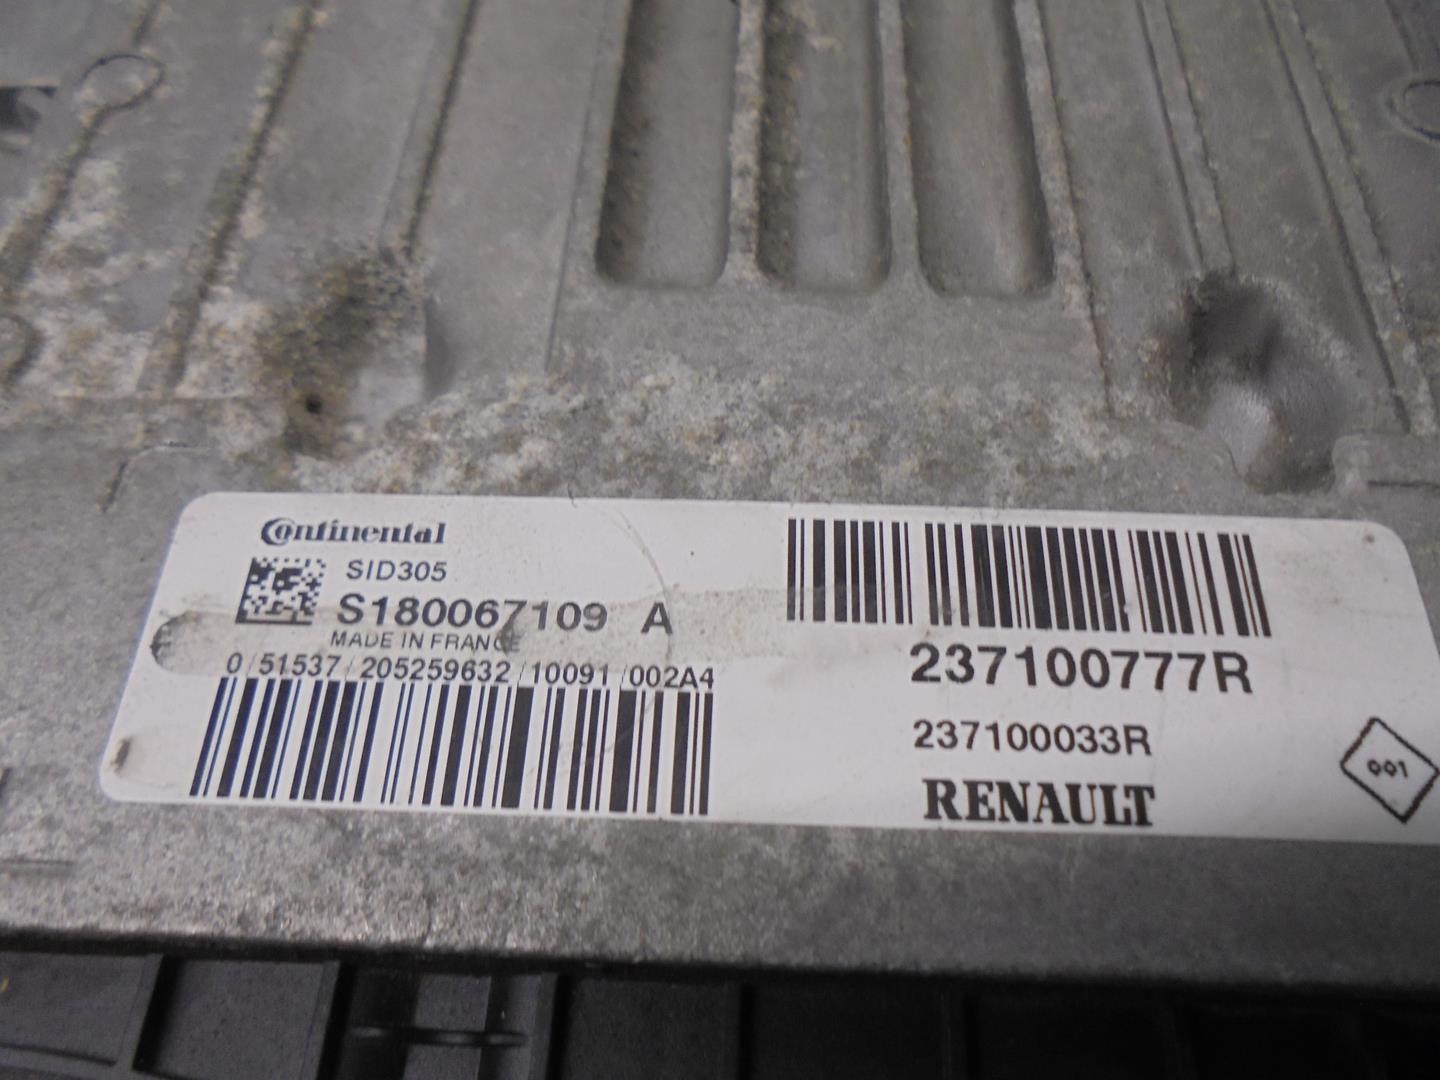 RENAULT Megane 3 generation (2008-2020) Блок управления двигателем 237100777R, S180067109A, SIEMENS 24192075